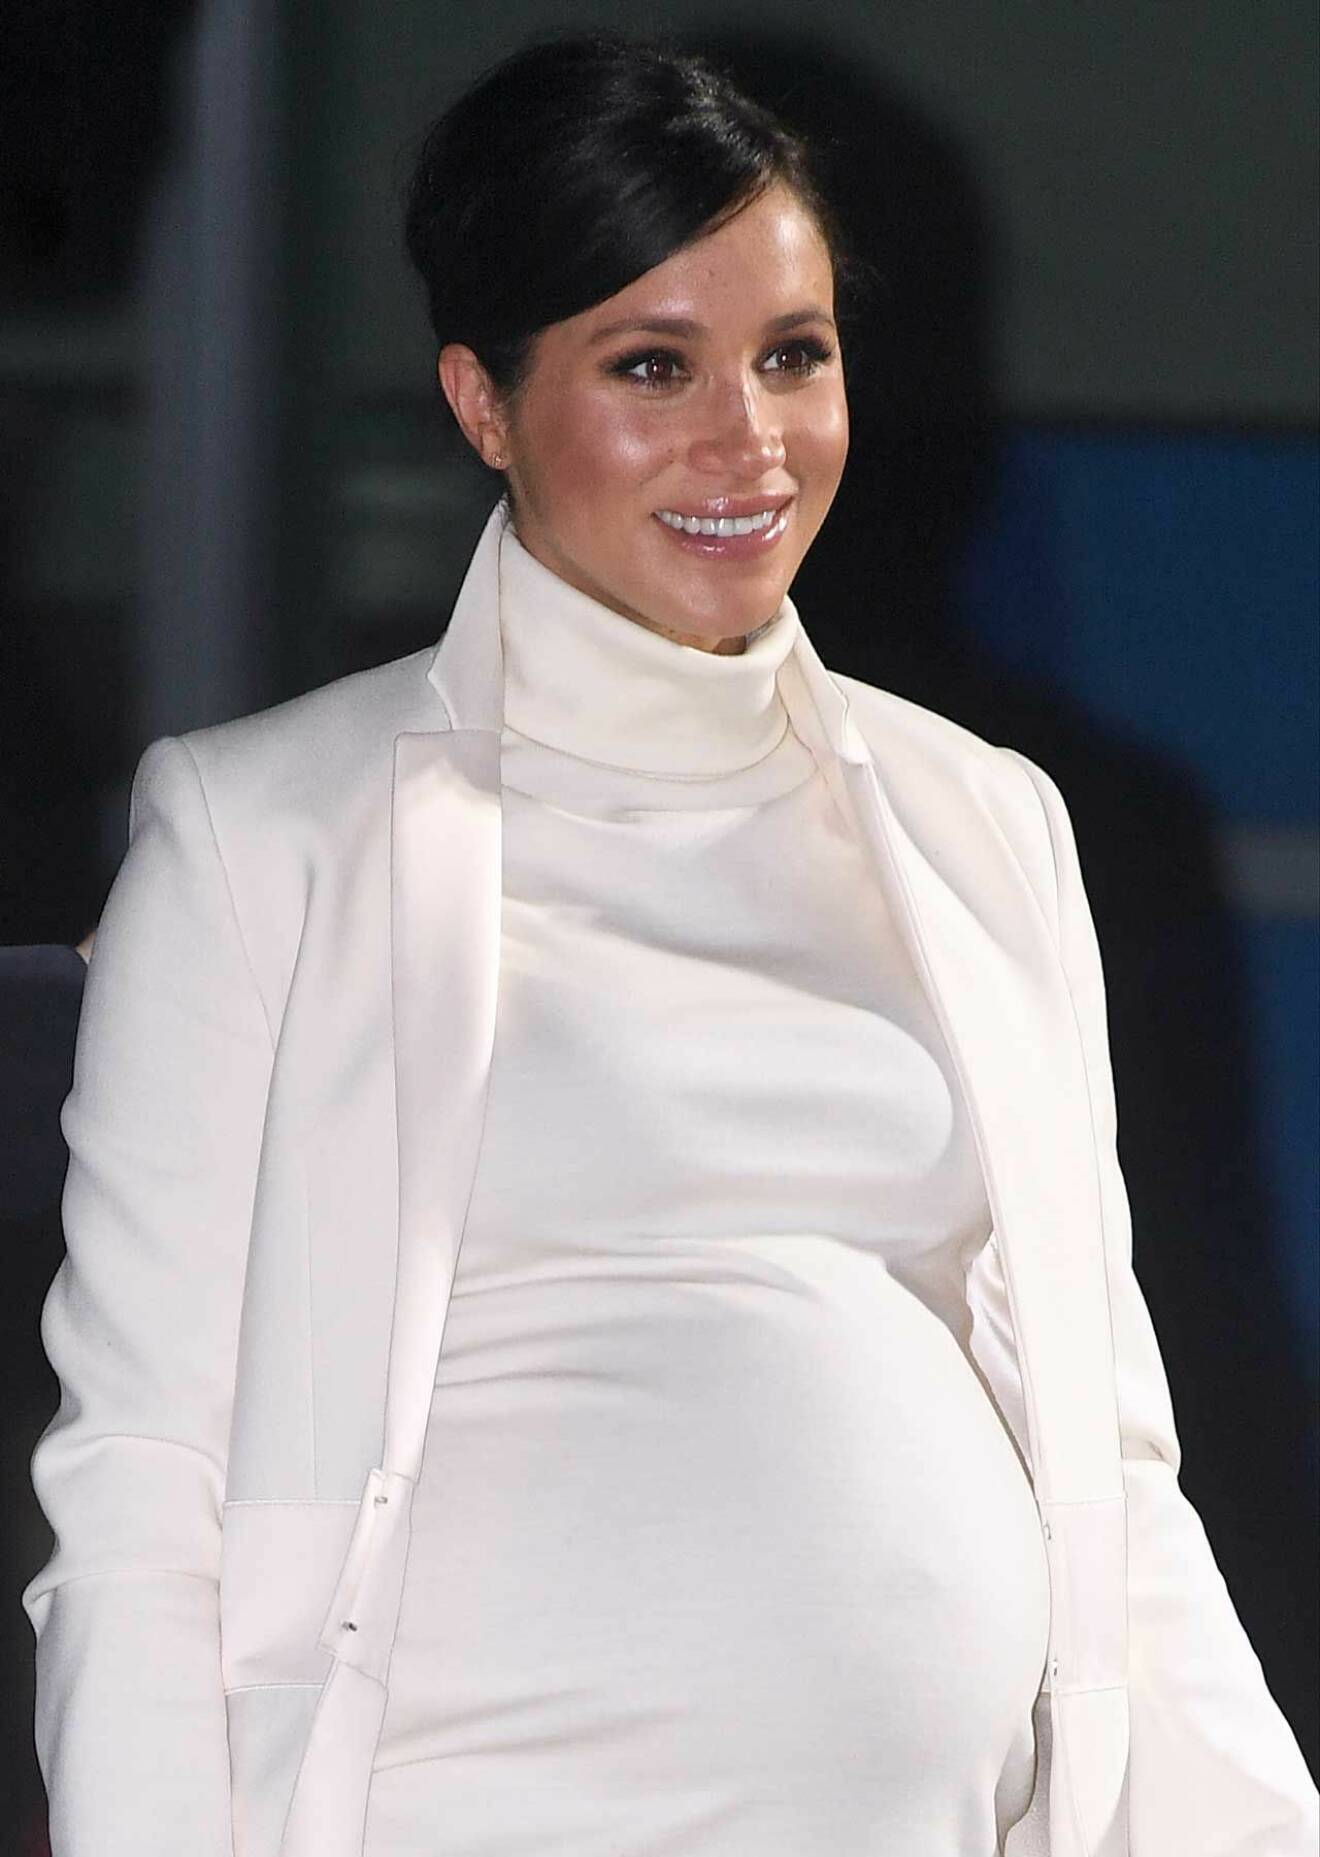 Hertiginnan Meghan är gravid i sjunde månaden.